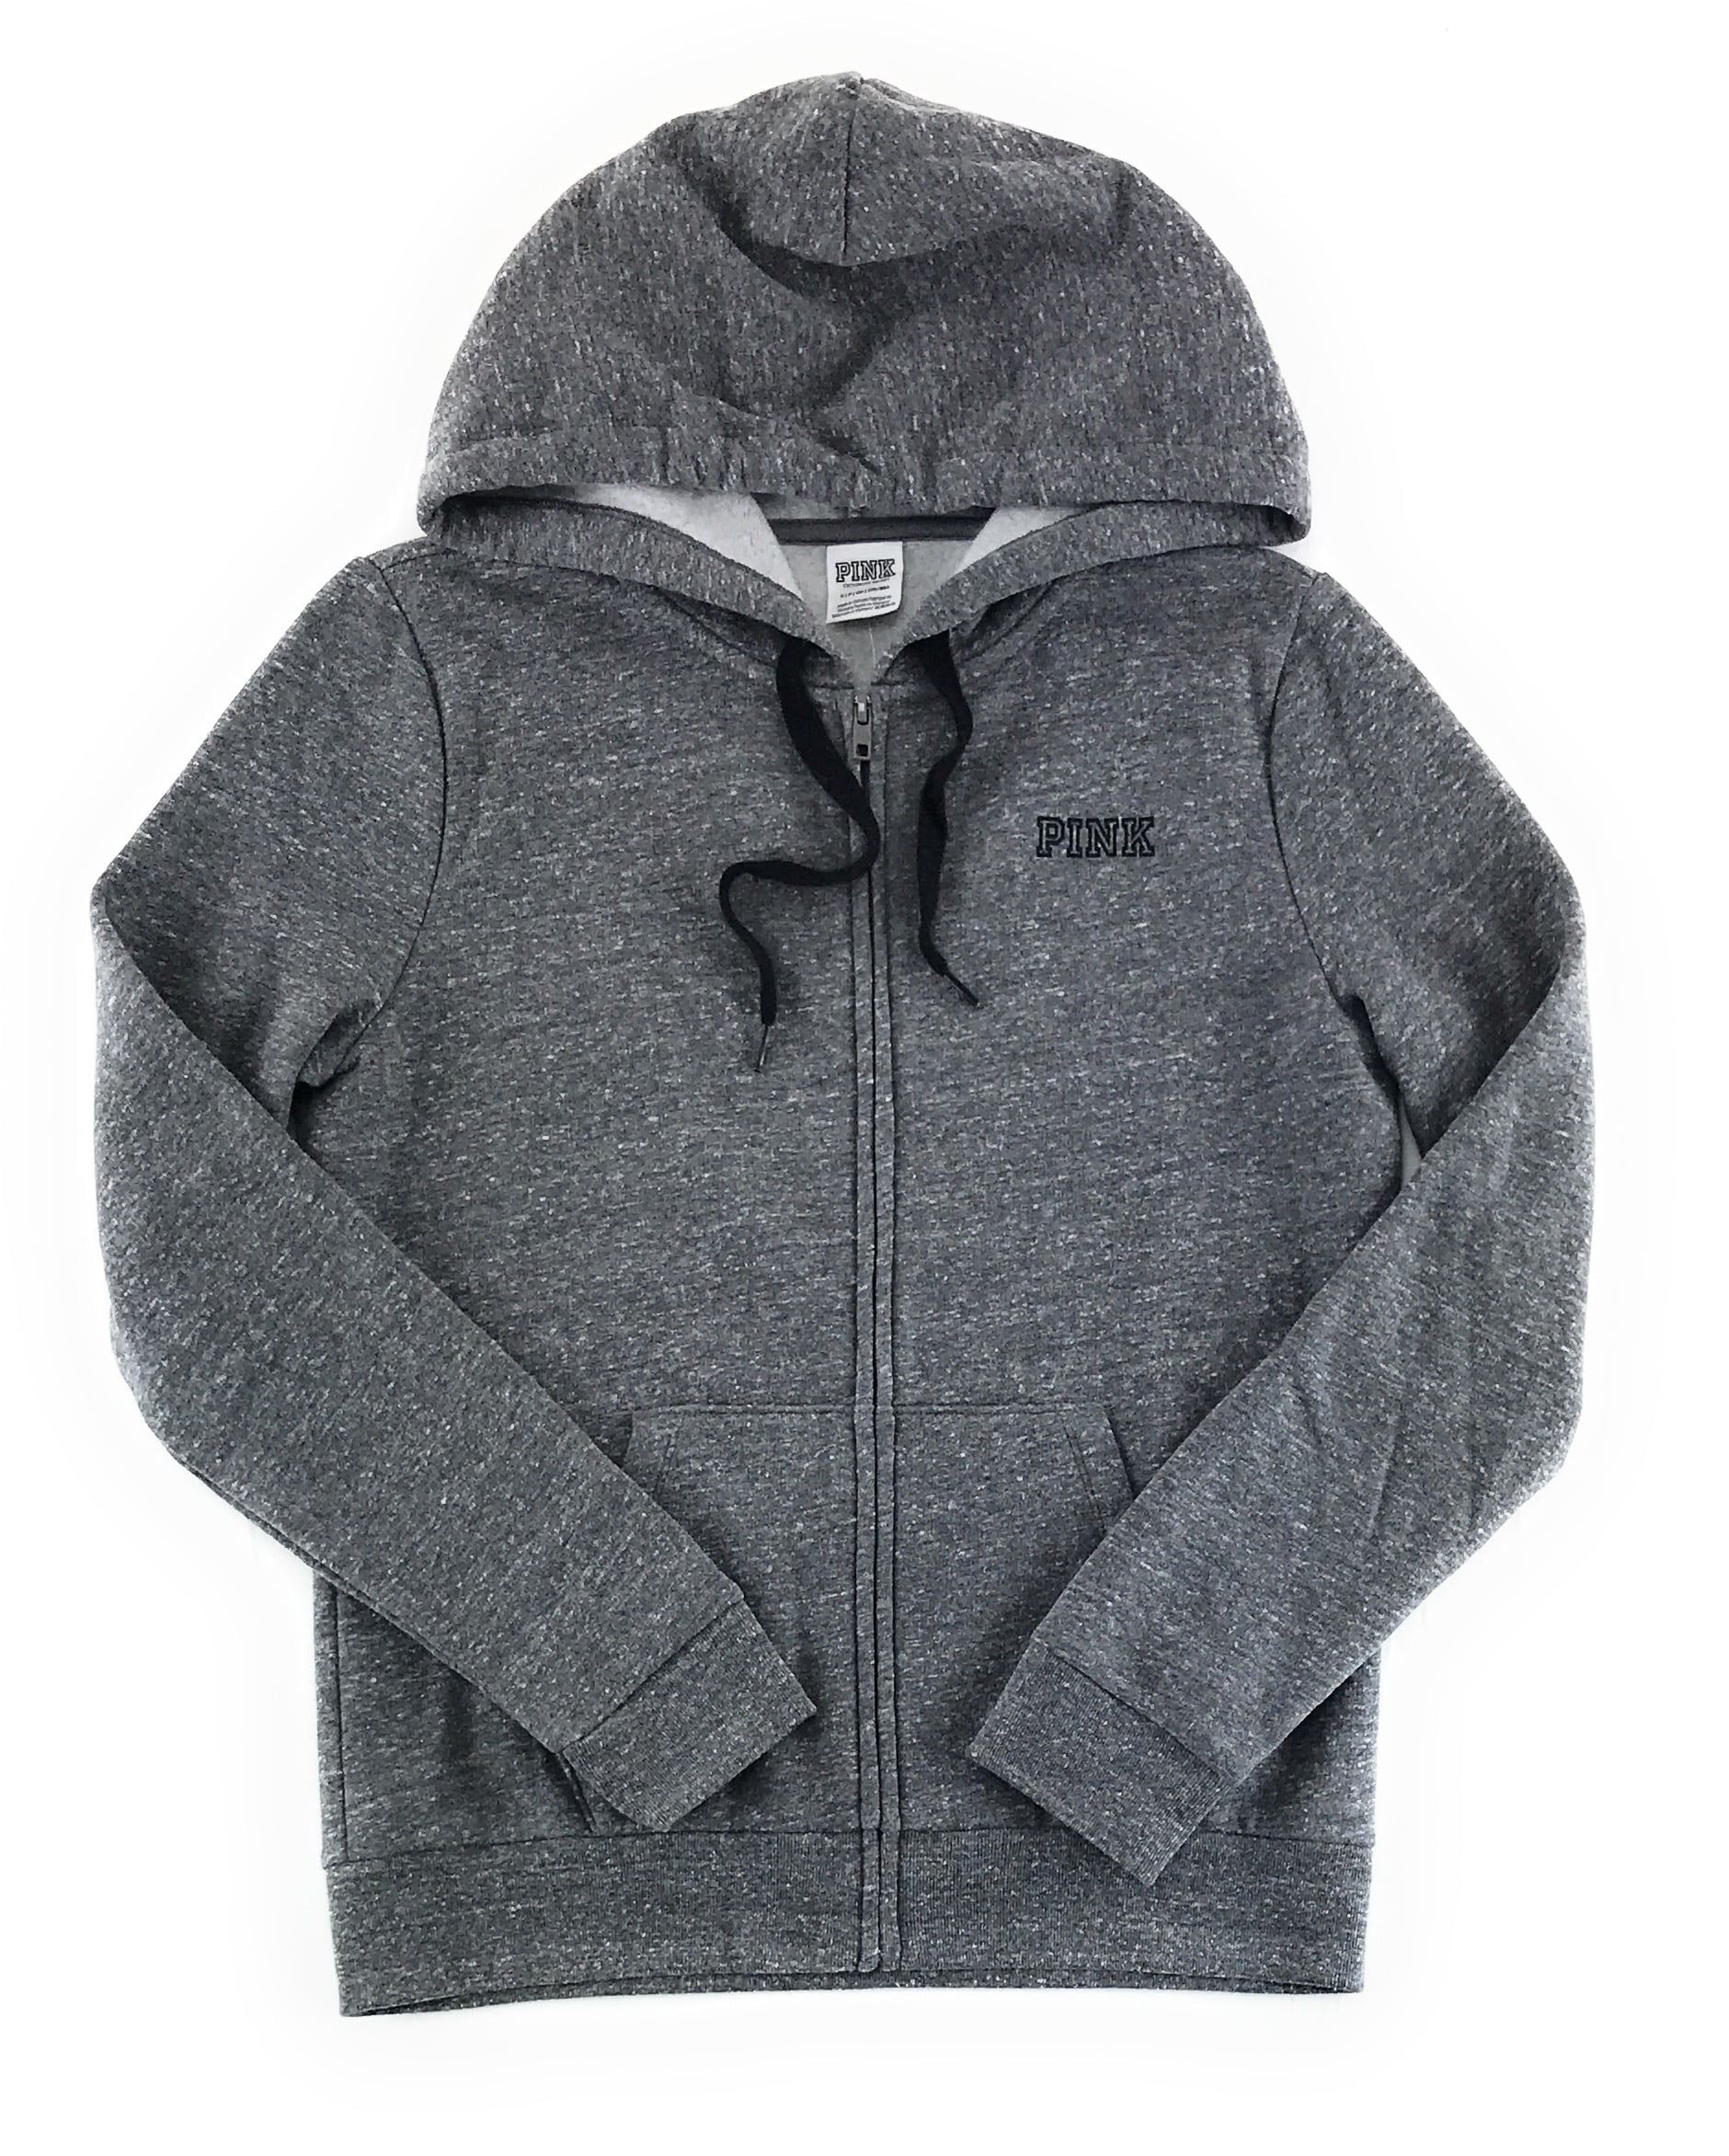 Buy Soft Ultimate Zip-Up Jacket - Order Hoodies & Sweatshirts online  1122942300 - PINK US